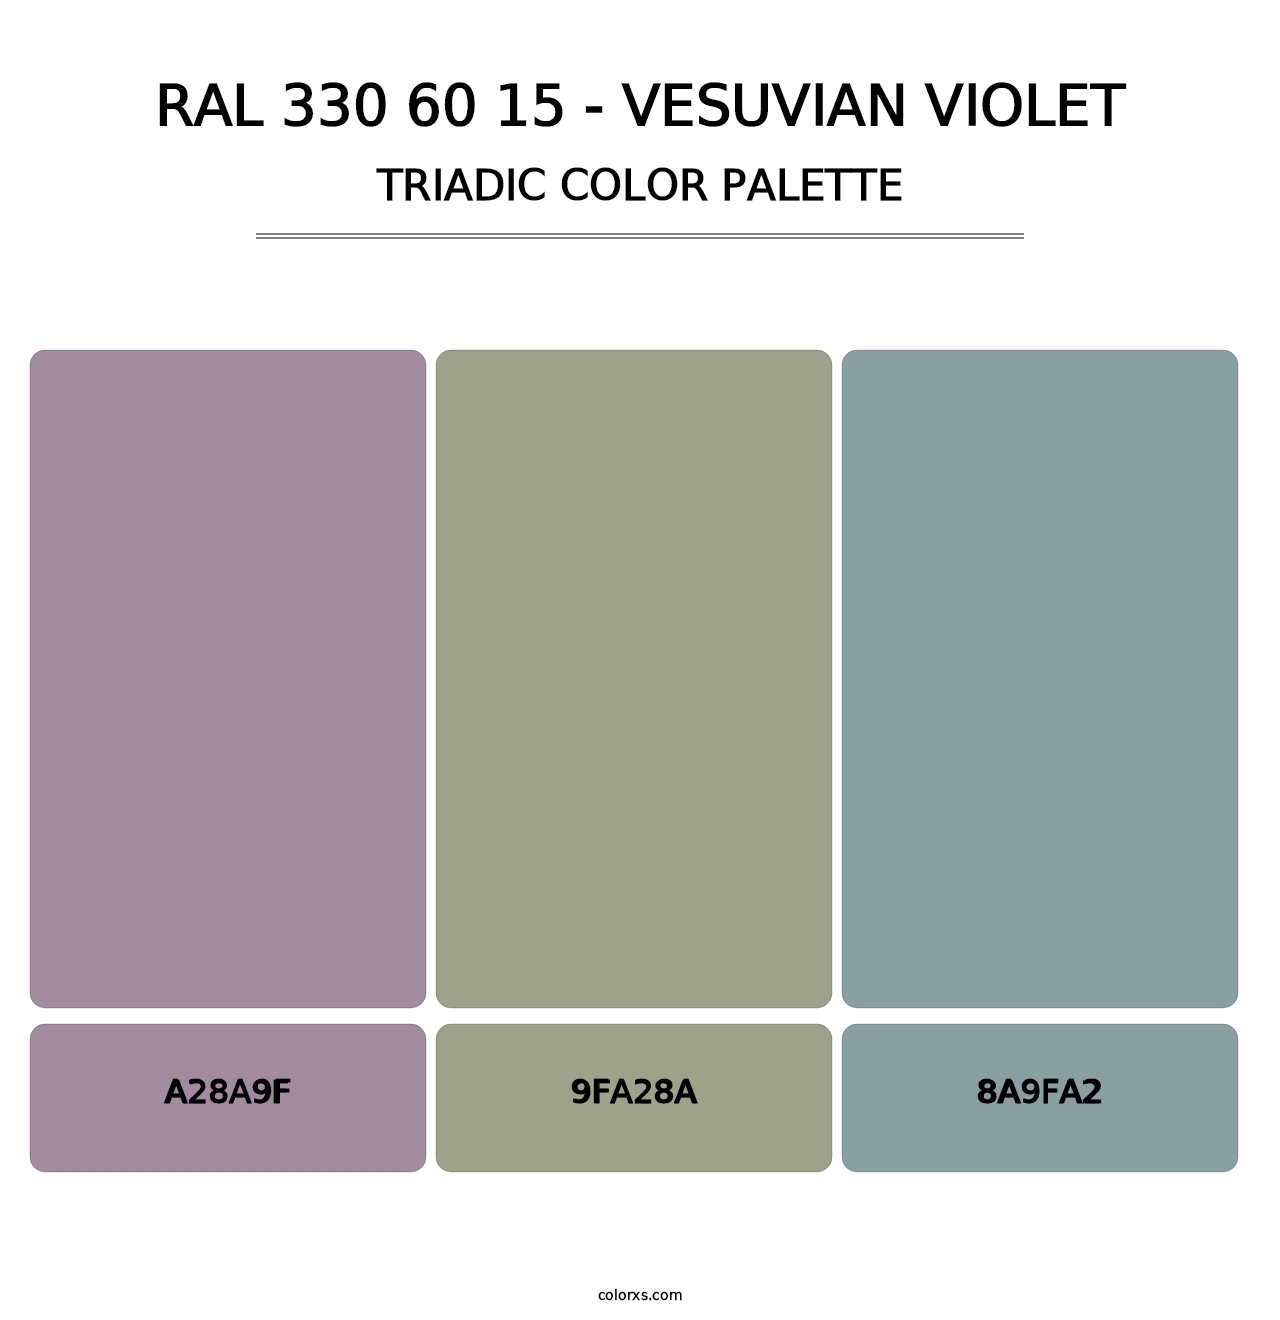 RAL 330 60 15 - Vesuvian Violet - Triadic Color Palette